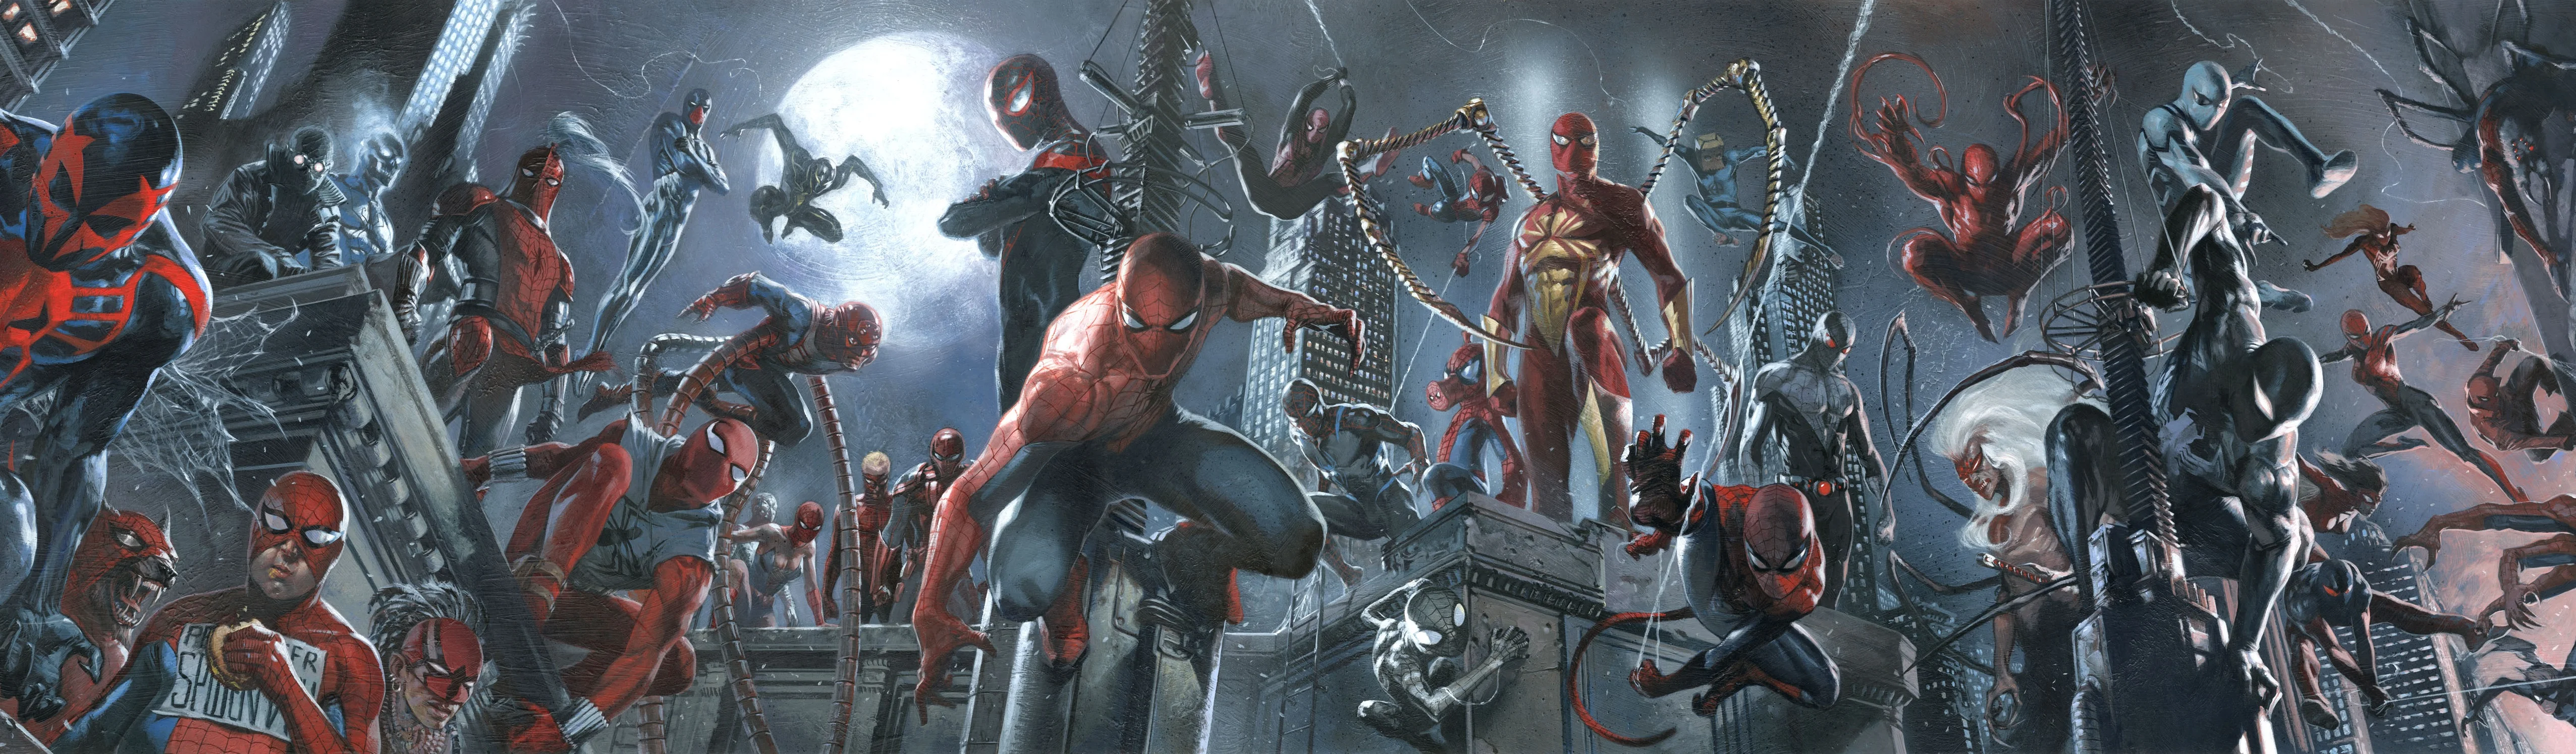 26 сентября издательство Marvel Comics начнет выпускать серию комиксов Spider-Geddon, где множество Людей-пауков (в том числе и Человек-Паук из скоро выходящей игры для PS4) соберутся вместе, чтобы противостоять общей угрозе.<br />Однако, как известно, все новое — это хорошо забытое старое: в 2014 году издательство Marvel уже выпустило событие с точно таким же синопсисом, и называлось оно Spider-Verse. Пришло время вспомнить, что же там было.